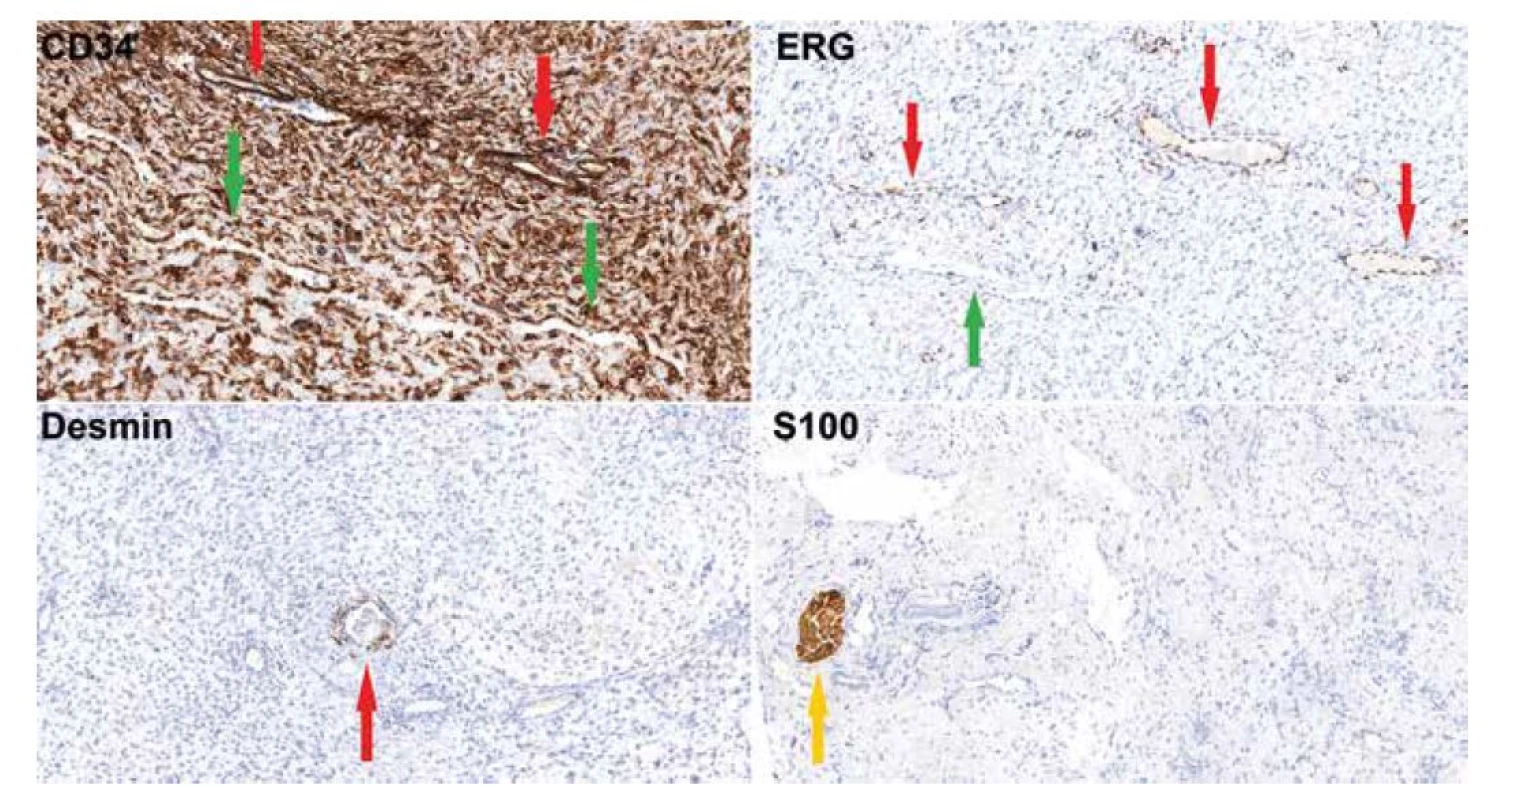 Imunohistochemické vyšetření (20x) dokumentující silnou cytoplazmatickou pozitivitu CD34 ve vřetenitých buňkách, obrovských buňkách, ve
výstelce pseudovaskulárních prostor (zelená šipka) i v pravém endotelu (červená šipka). ERG je pozitivní jen ve výstelce pravých kapilár (červená šipka),
zatímco buňky pseudovaskulárních prostor jsou negativní (zelená šipka). Desmin je pozitivní v hladkosvalových buňkách kolem pravých cév (červená
šipka), samotný nádor je negativní. S100 protein reaguje s periferními nervy v peritumorózních měkkých tkáních (žlutá šipka), nádor je negativní.